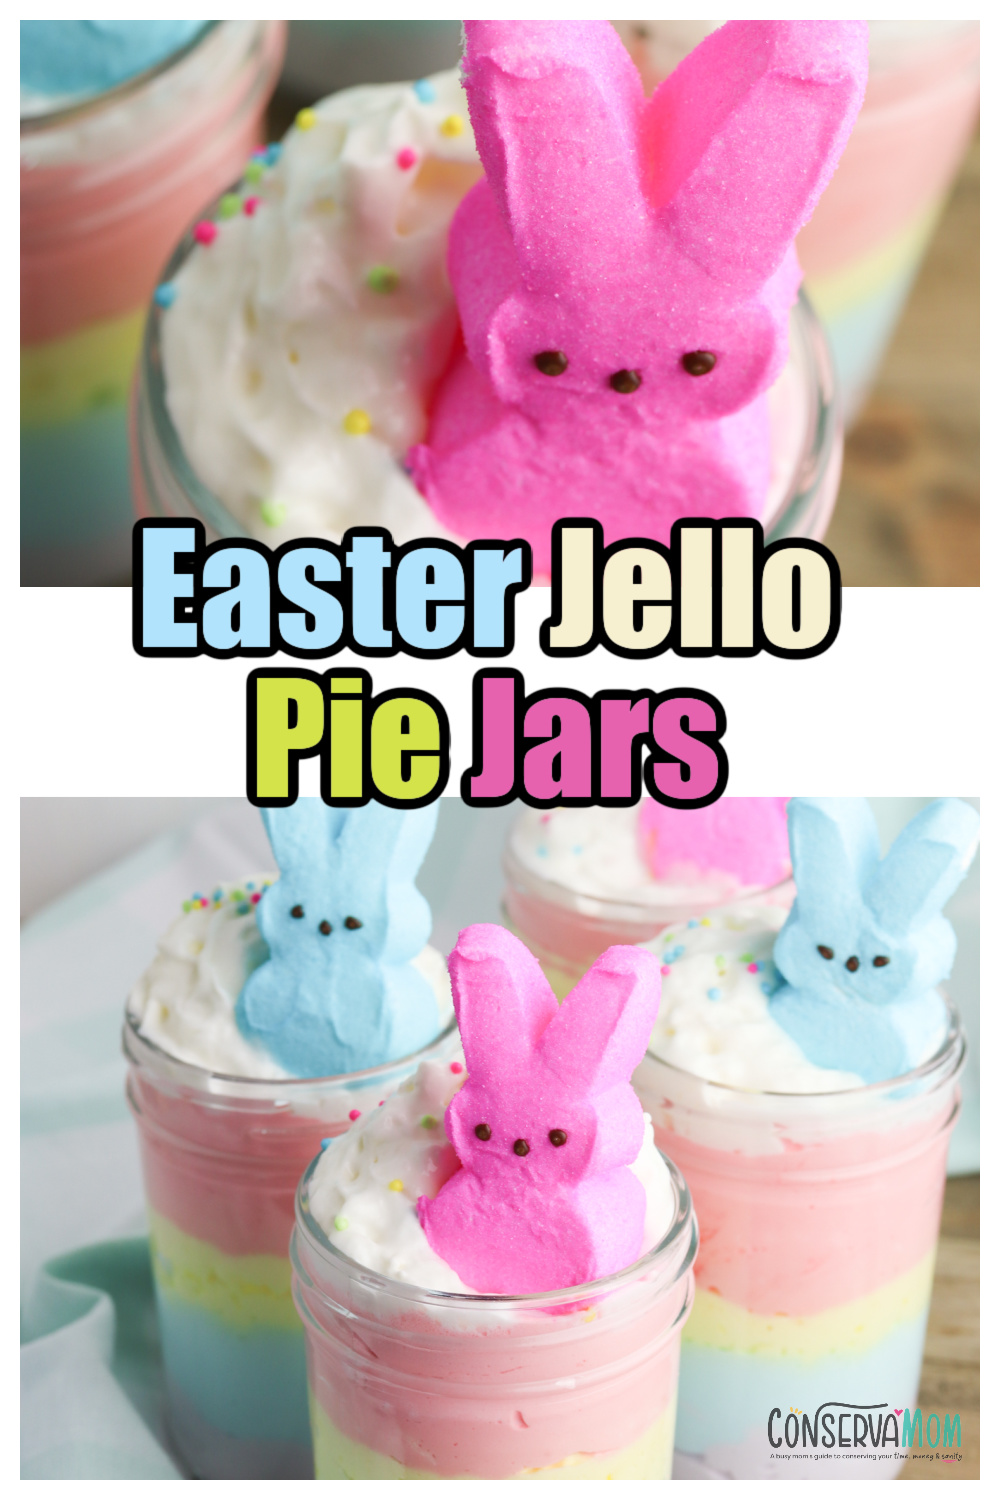 Easter Jello Pie Jars